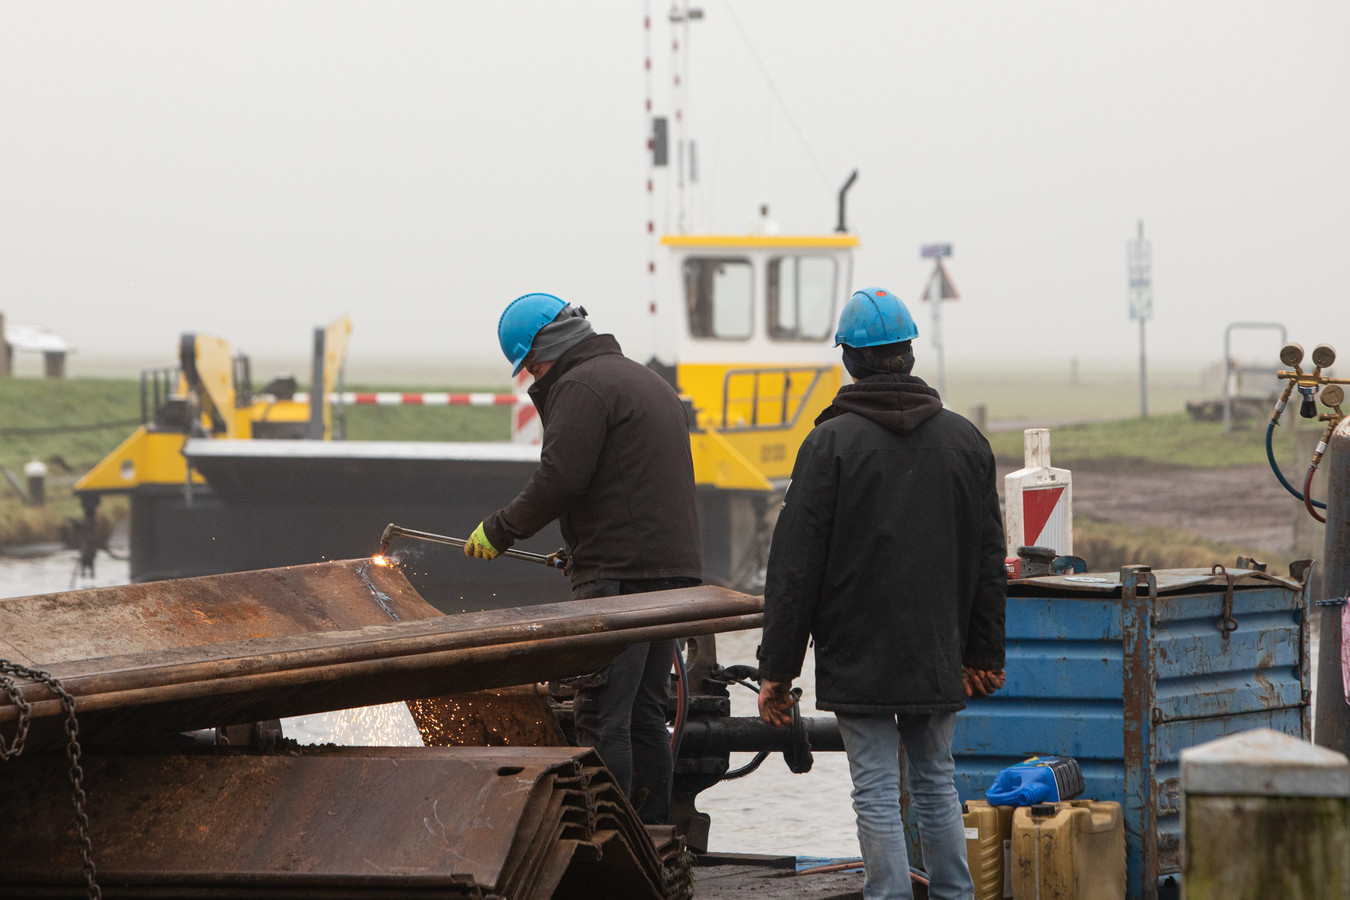 De werkzaamheden vinden plaats in de havenkom waar de veerpont van Eemdijk naar Eemnes aanmeert.